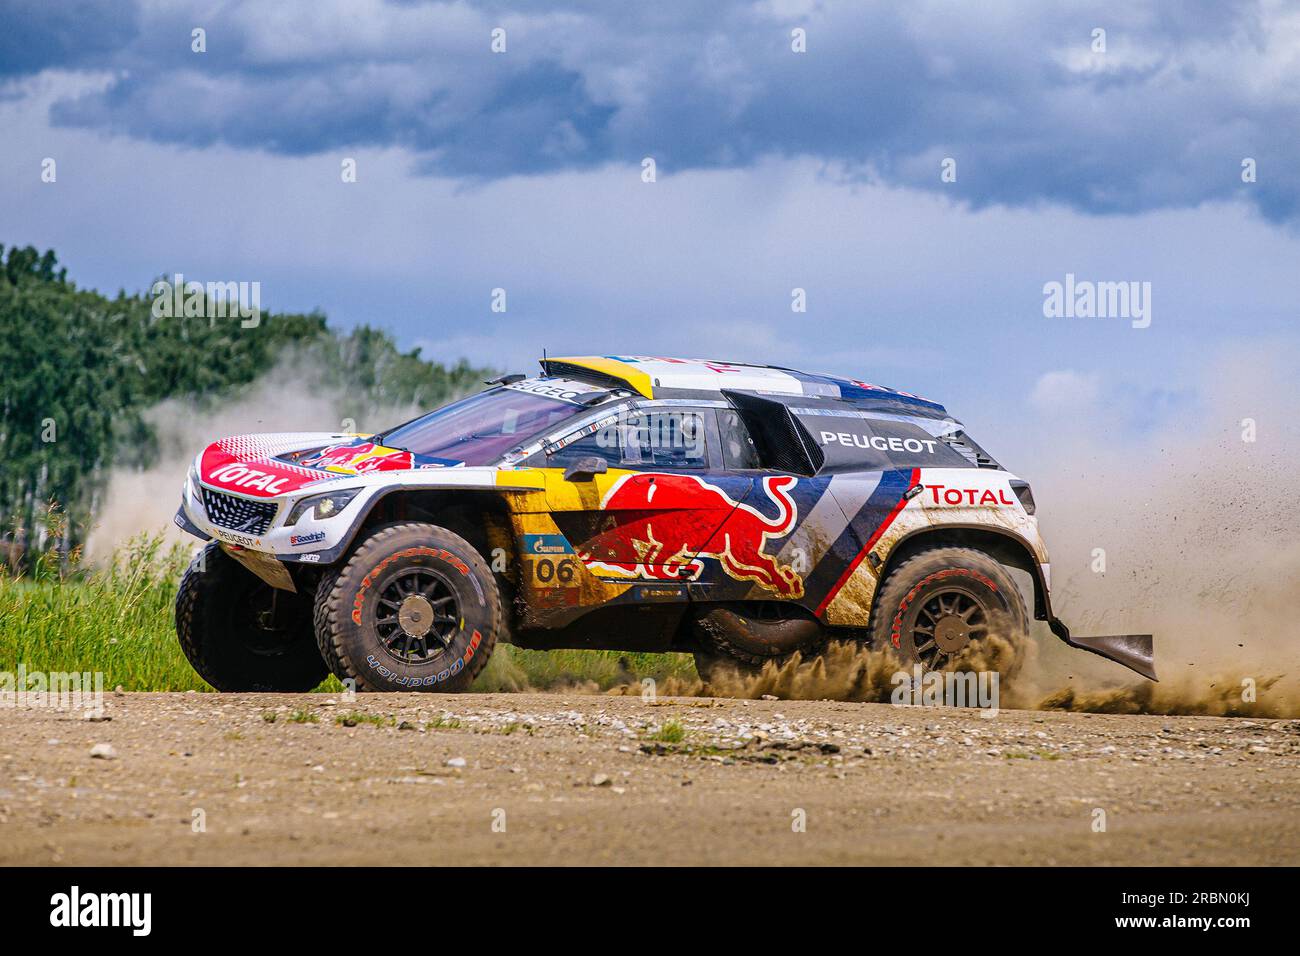 Région de Chelyabinsk, Russie - 10 juillet 2017 : Peugeot cross-country avec l'équipe de france lors du rallye 'Silk Way' Banque D'Images